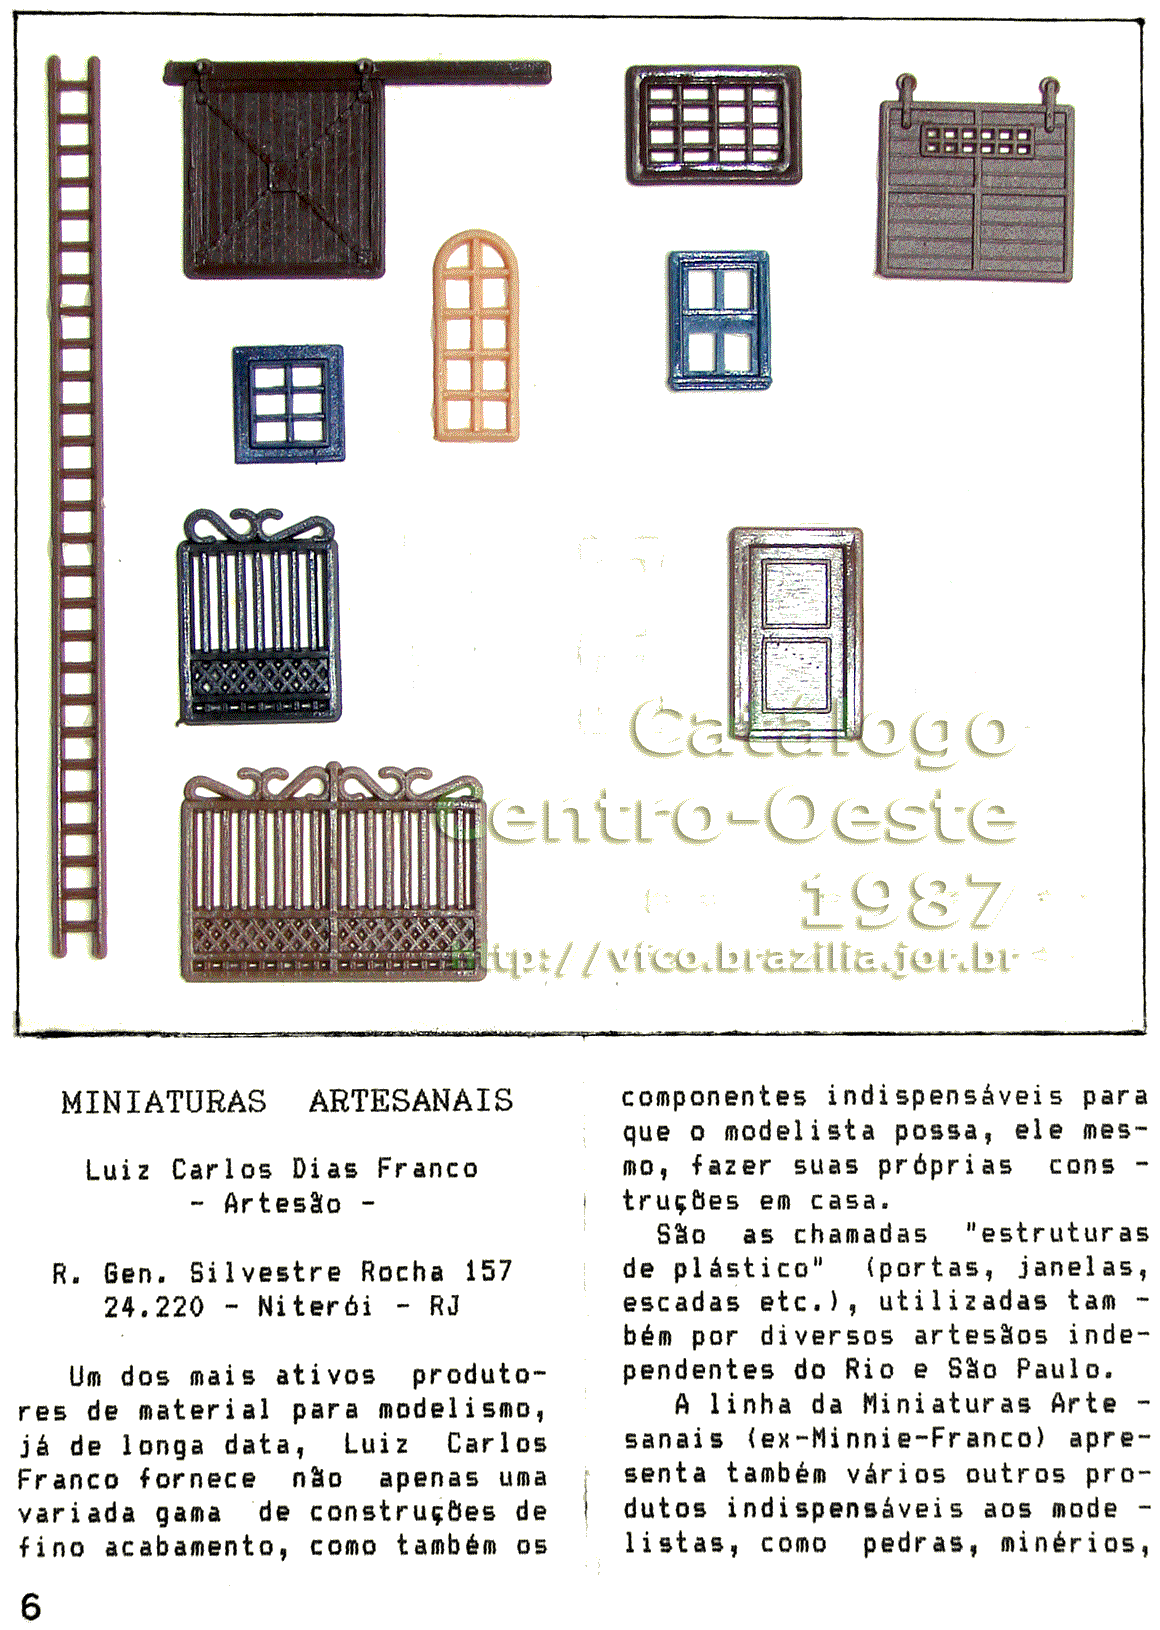 Estruturas decorativas para maquetes de ferreomodelismo, da Miniaturas Artesanais, na página 6 do Catálogo Centro-Oeste número 0, de 1987 